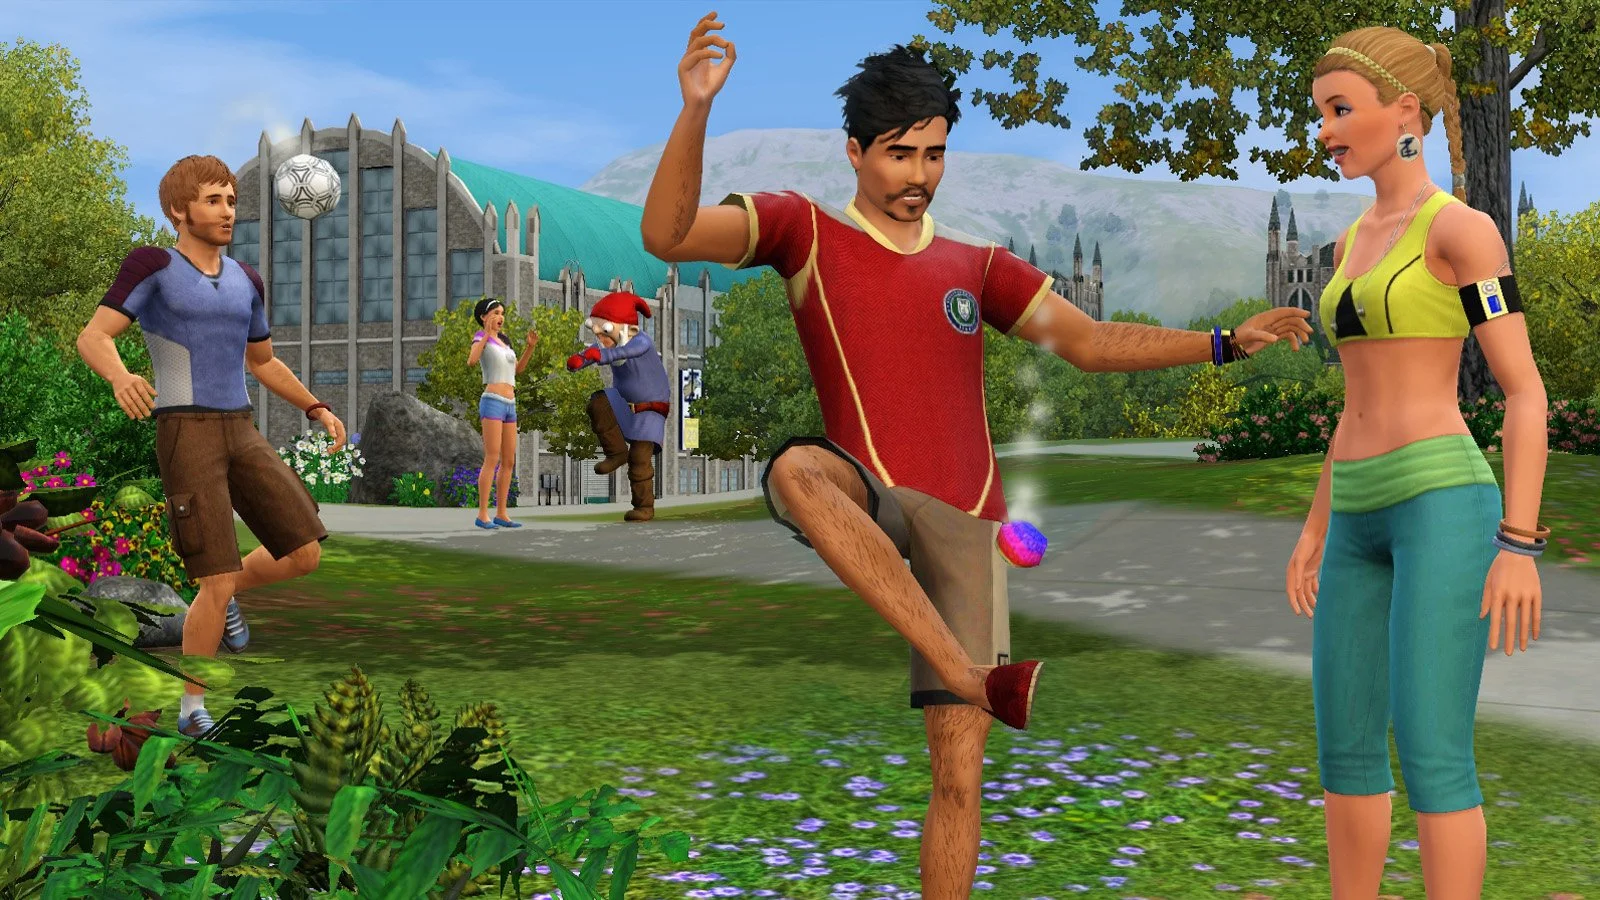 ​Релиз игры The Sims 4 состоится следующей осенью - изображение обложка